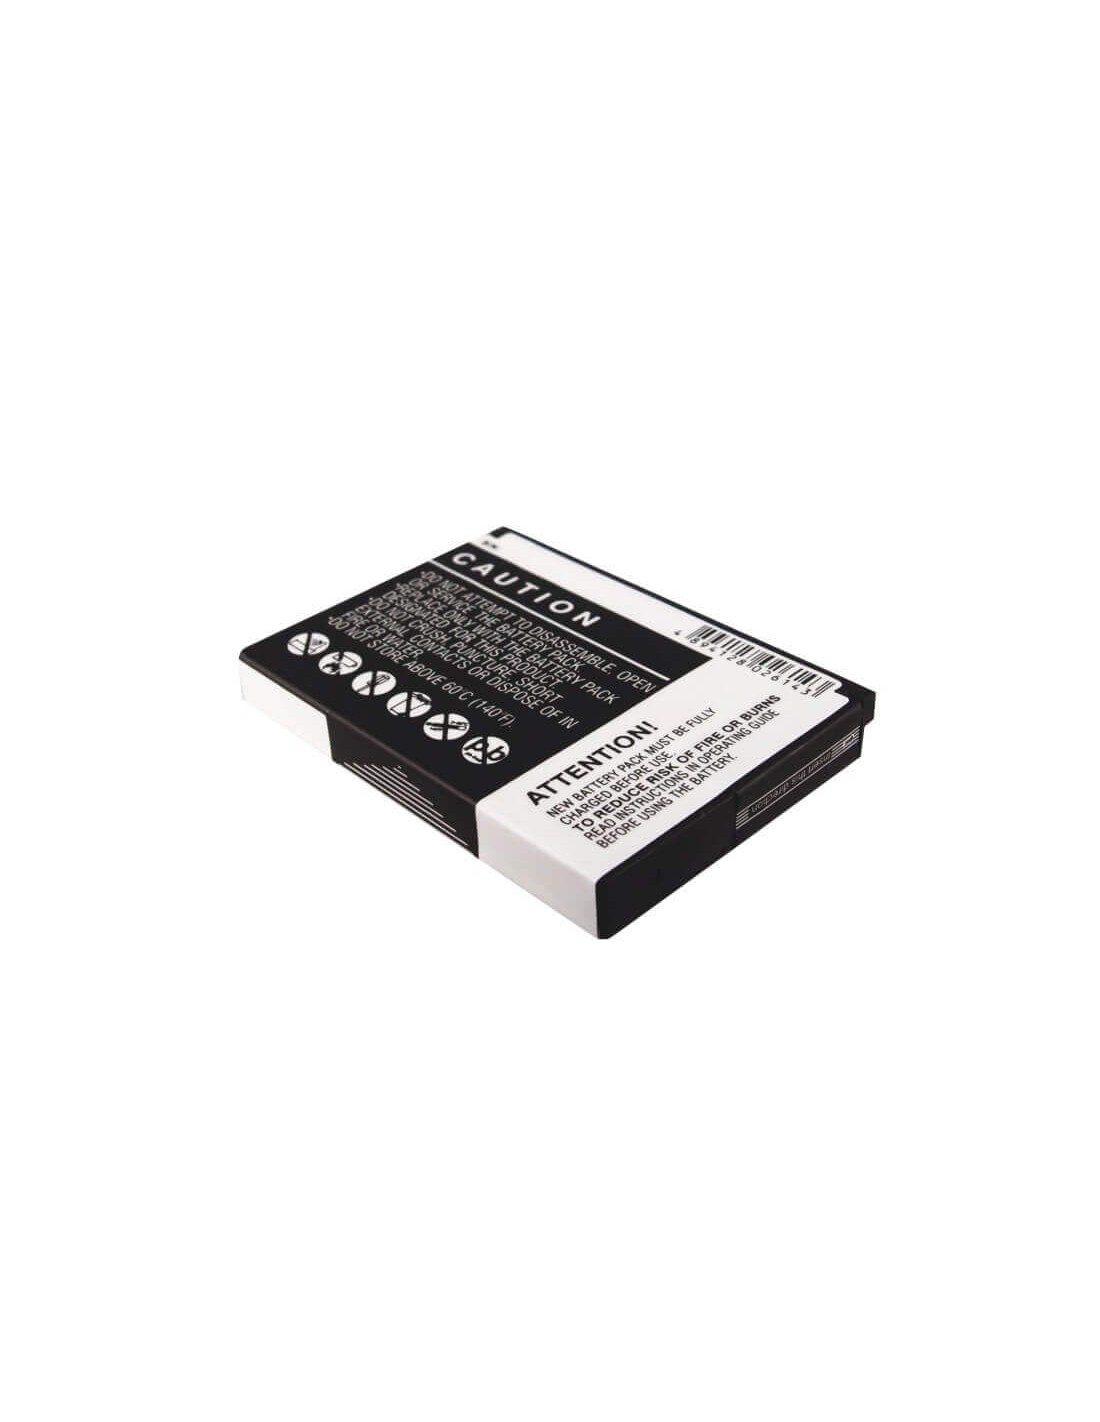 Battery for Blackberry 8900, Storm, Storm 9500 3.7V, 1400mAh - 5.18Wh